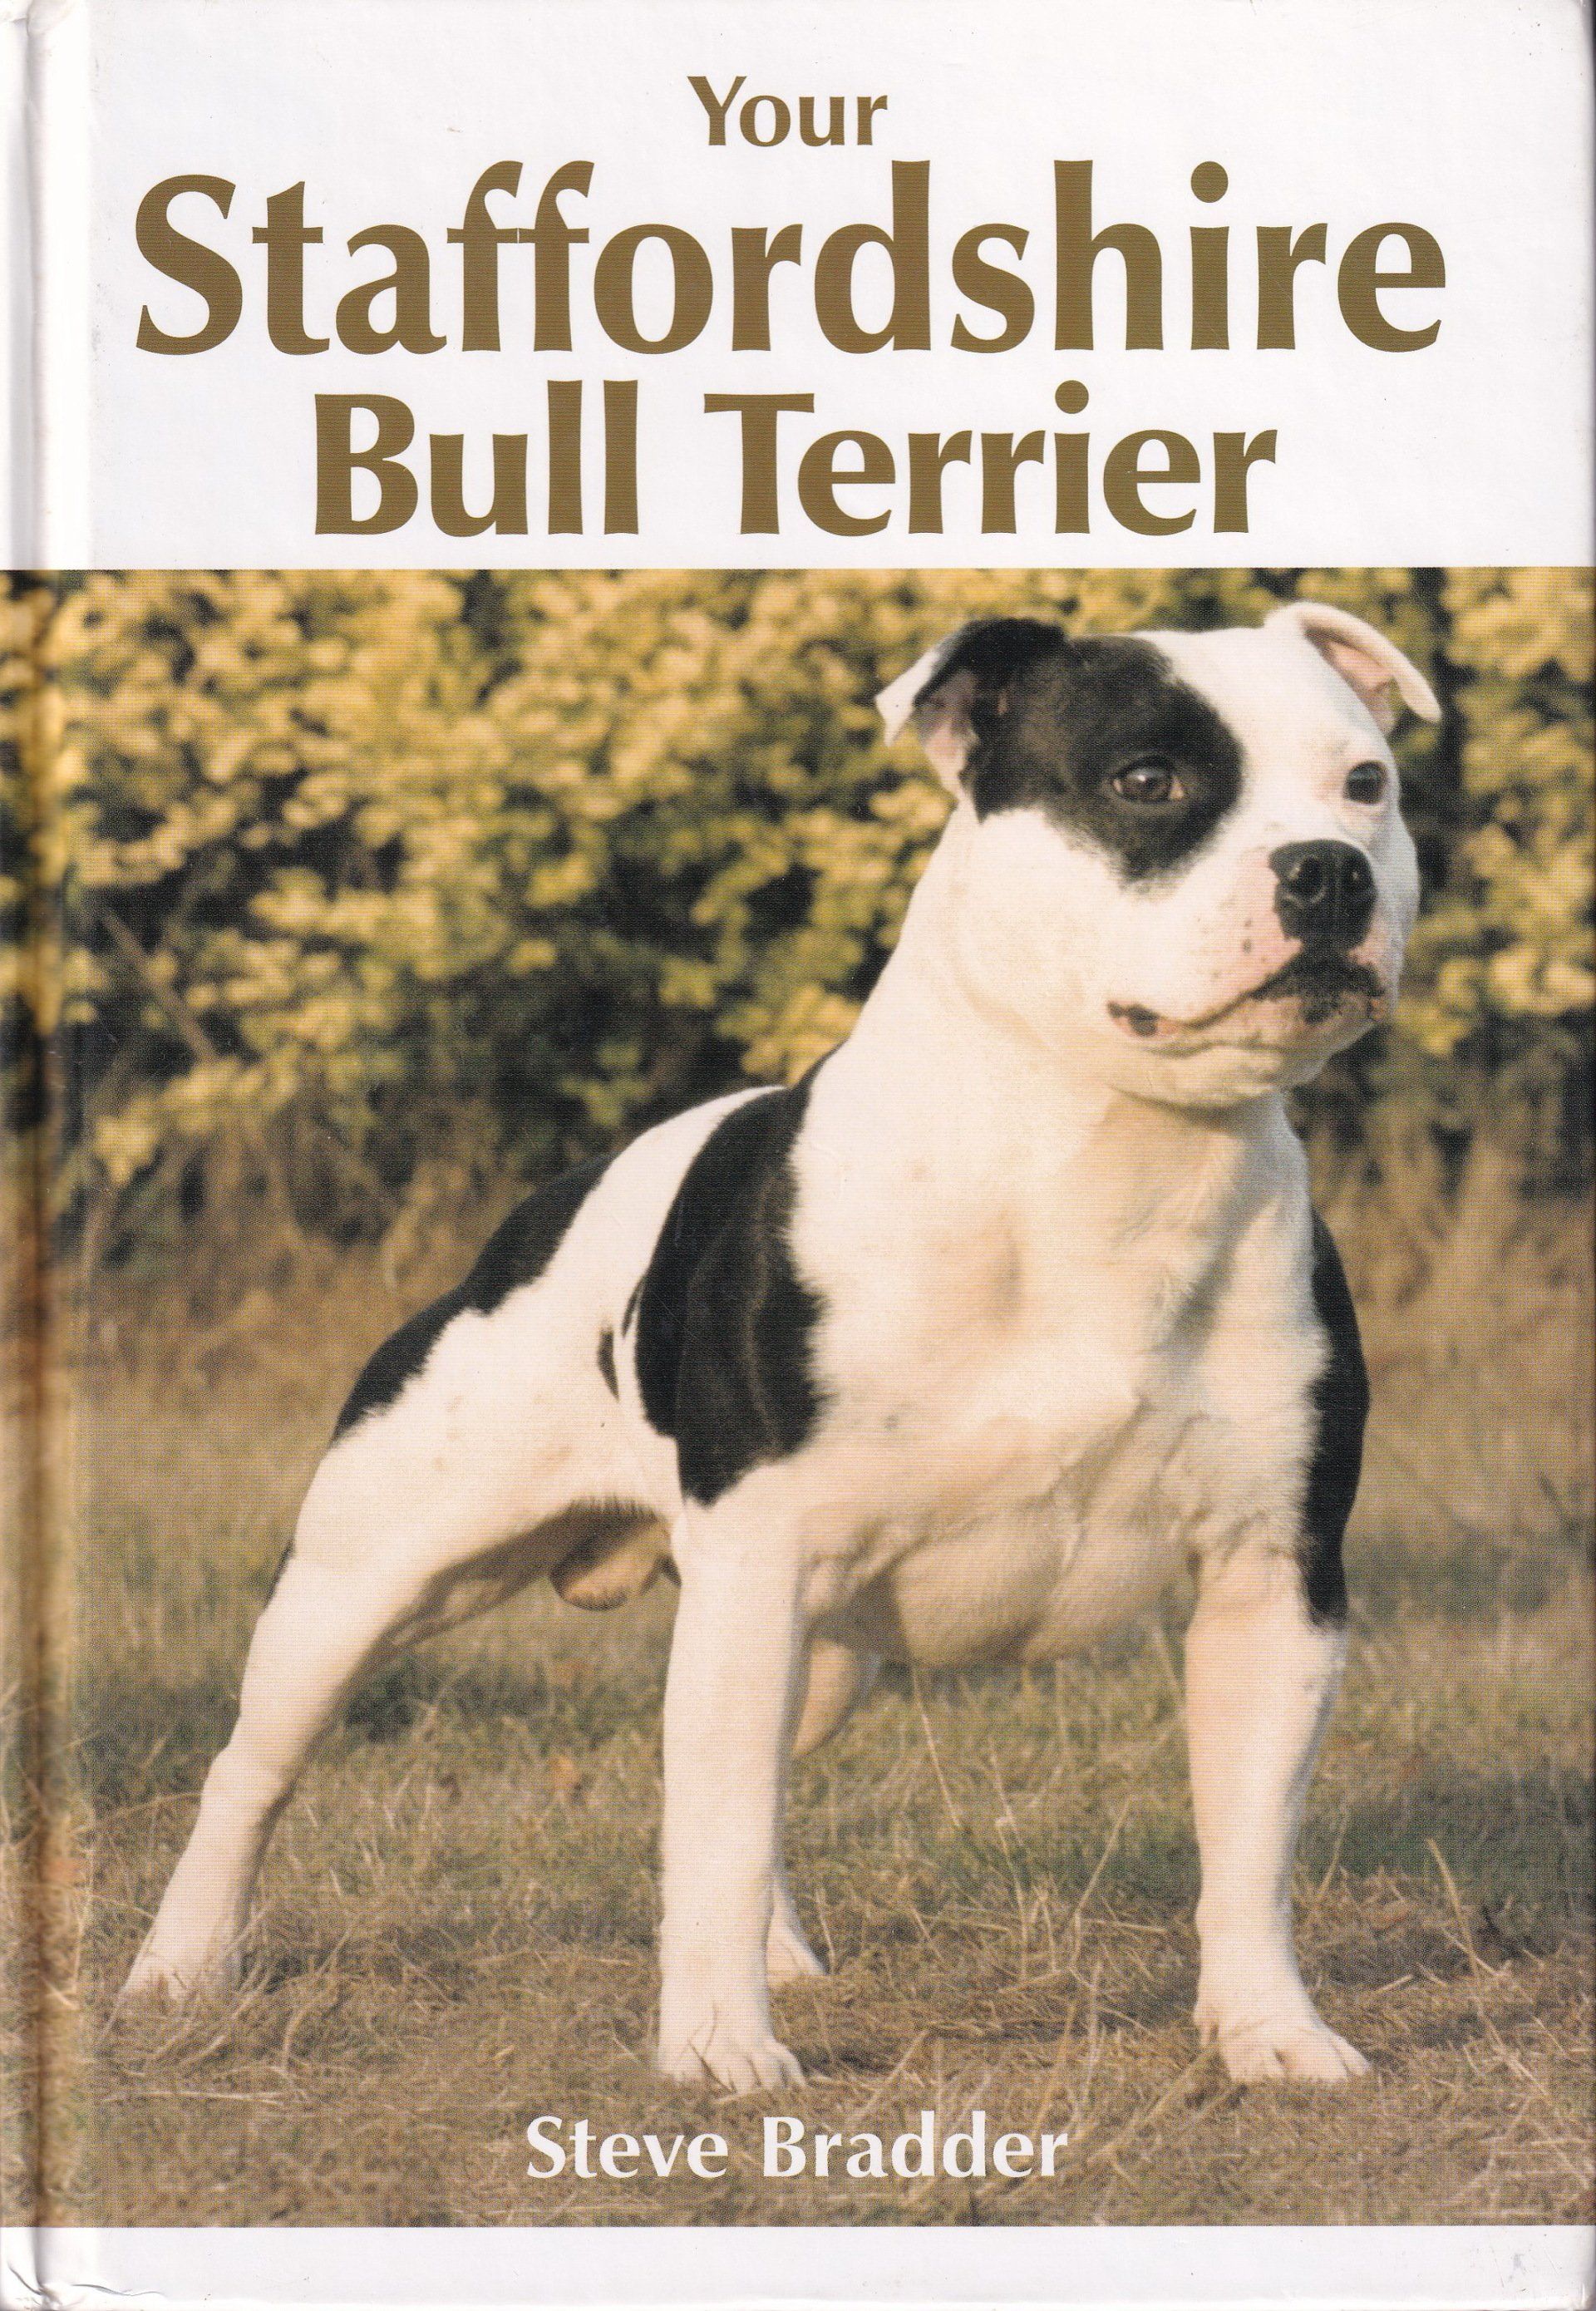 Your Staffordshire Bull Terrier by Steve Bradder